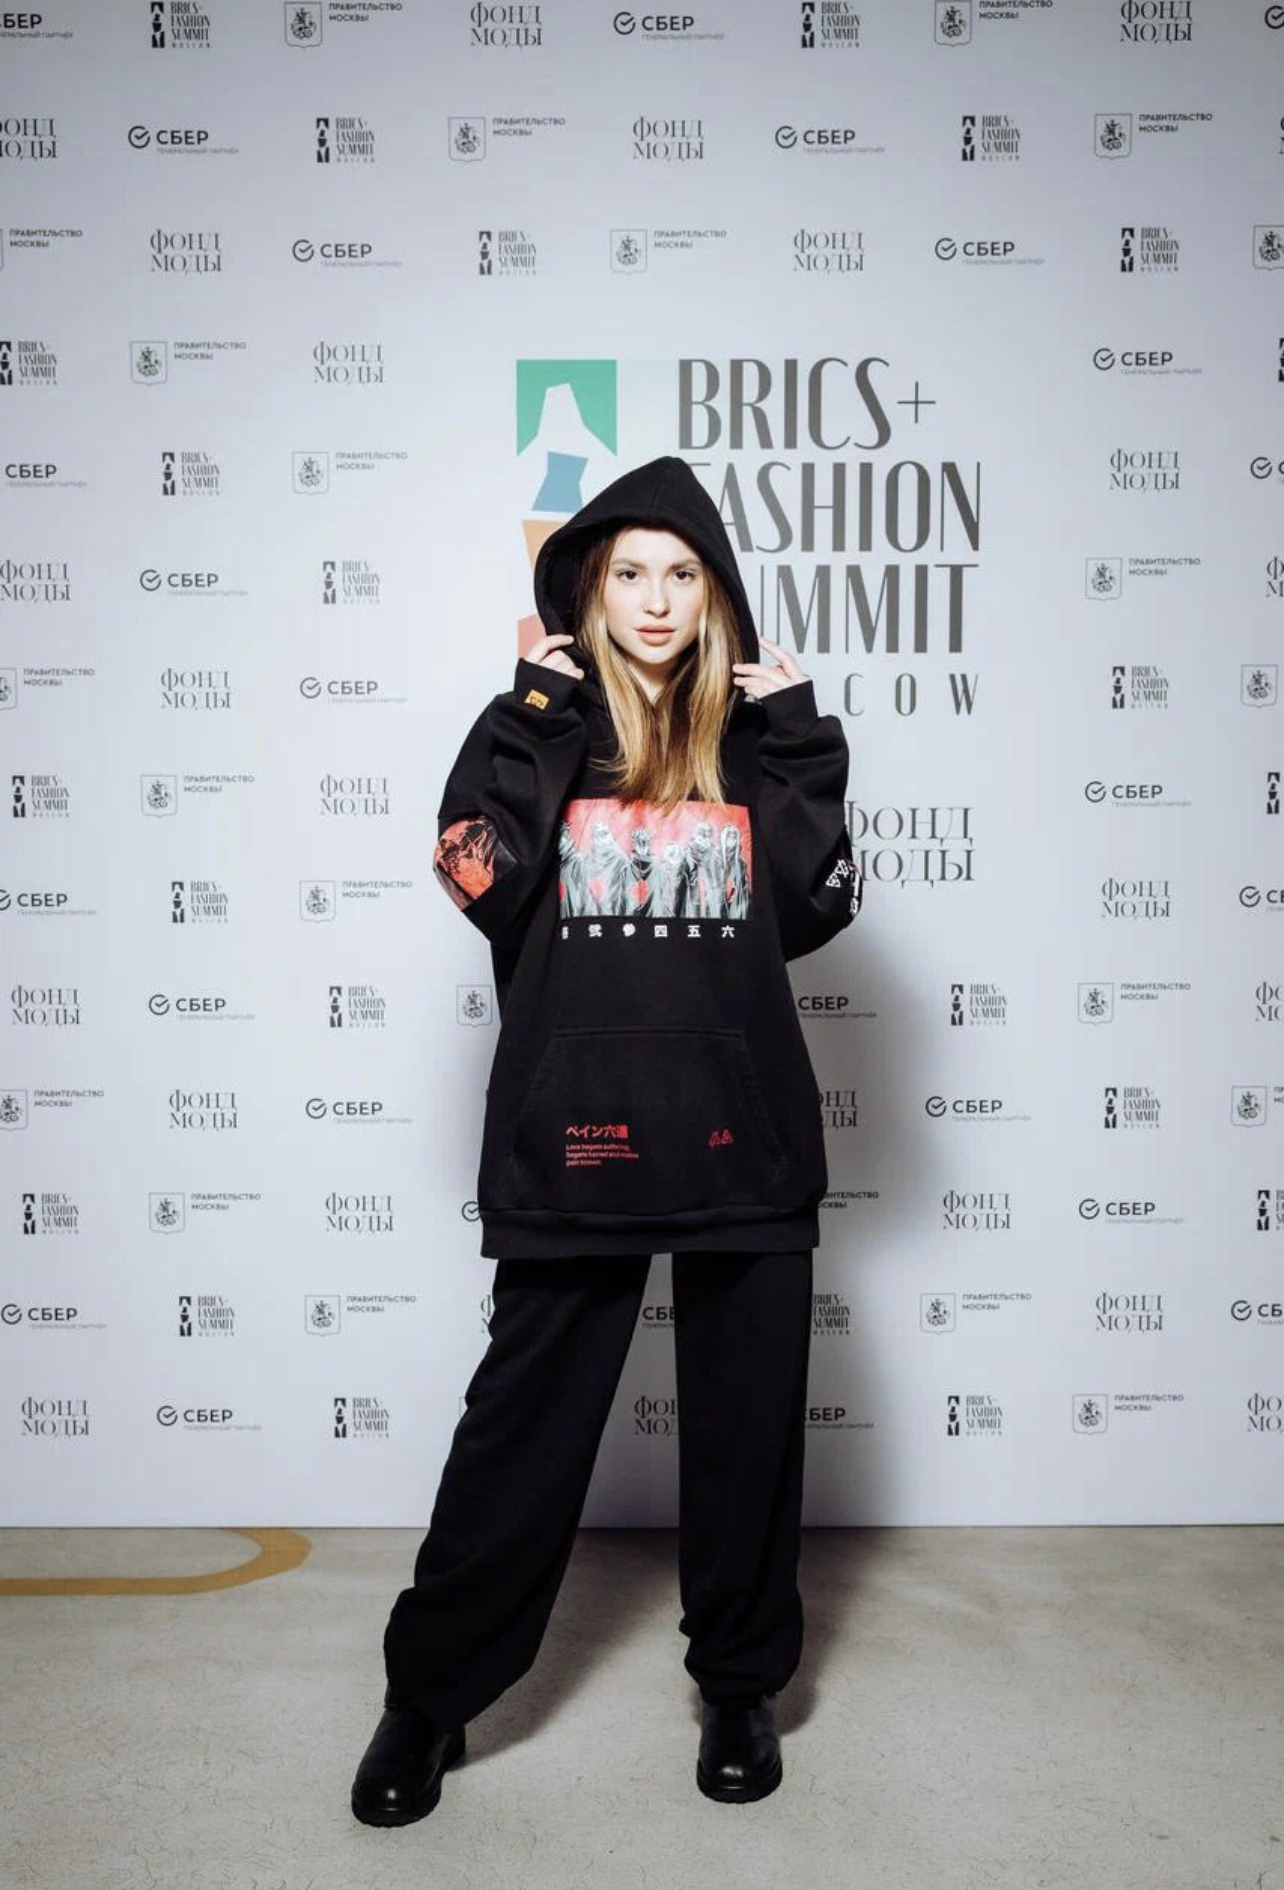 фото: Блогеры «Инсайт Люди» приняли участие в BRICS+ Fashion Summit